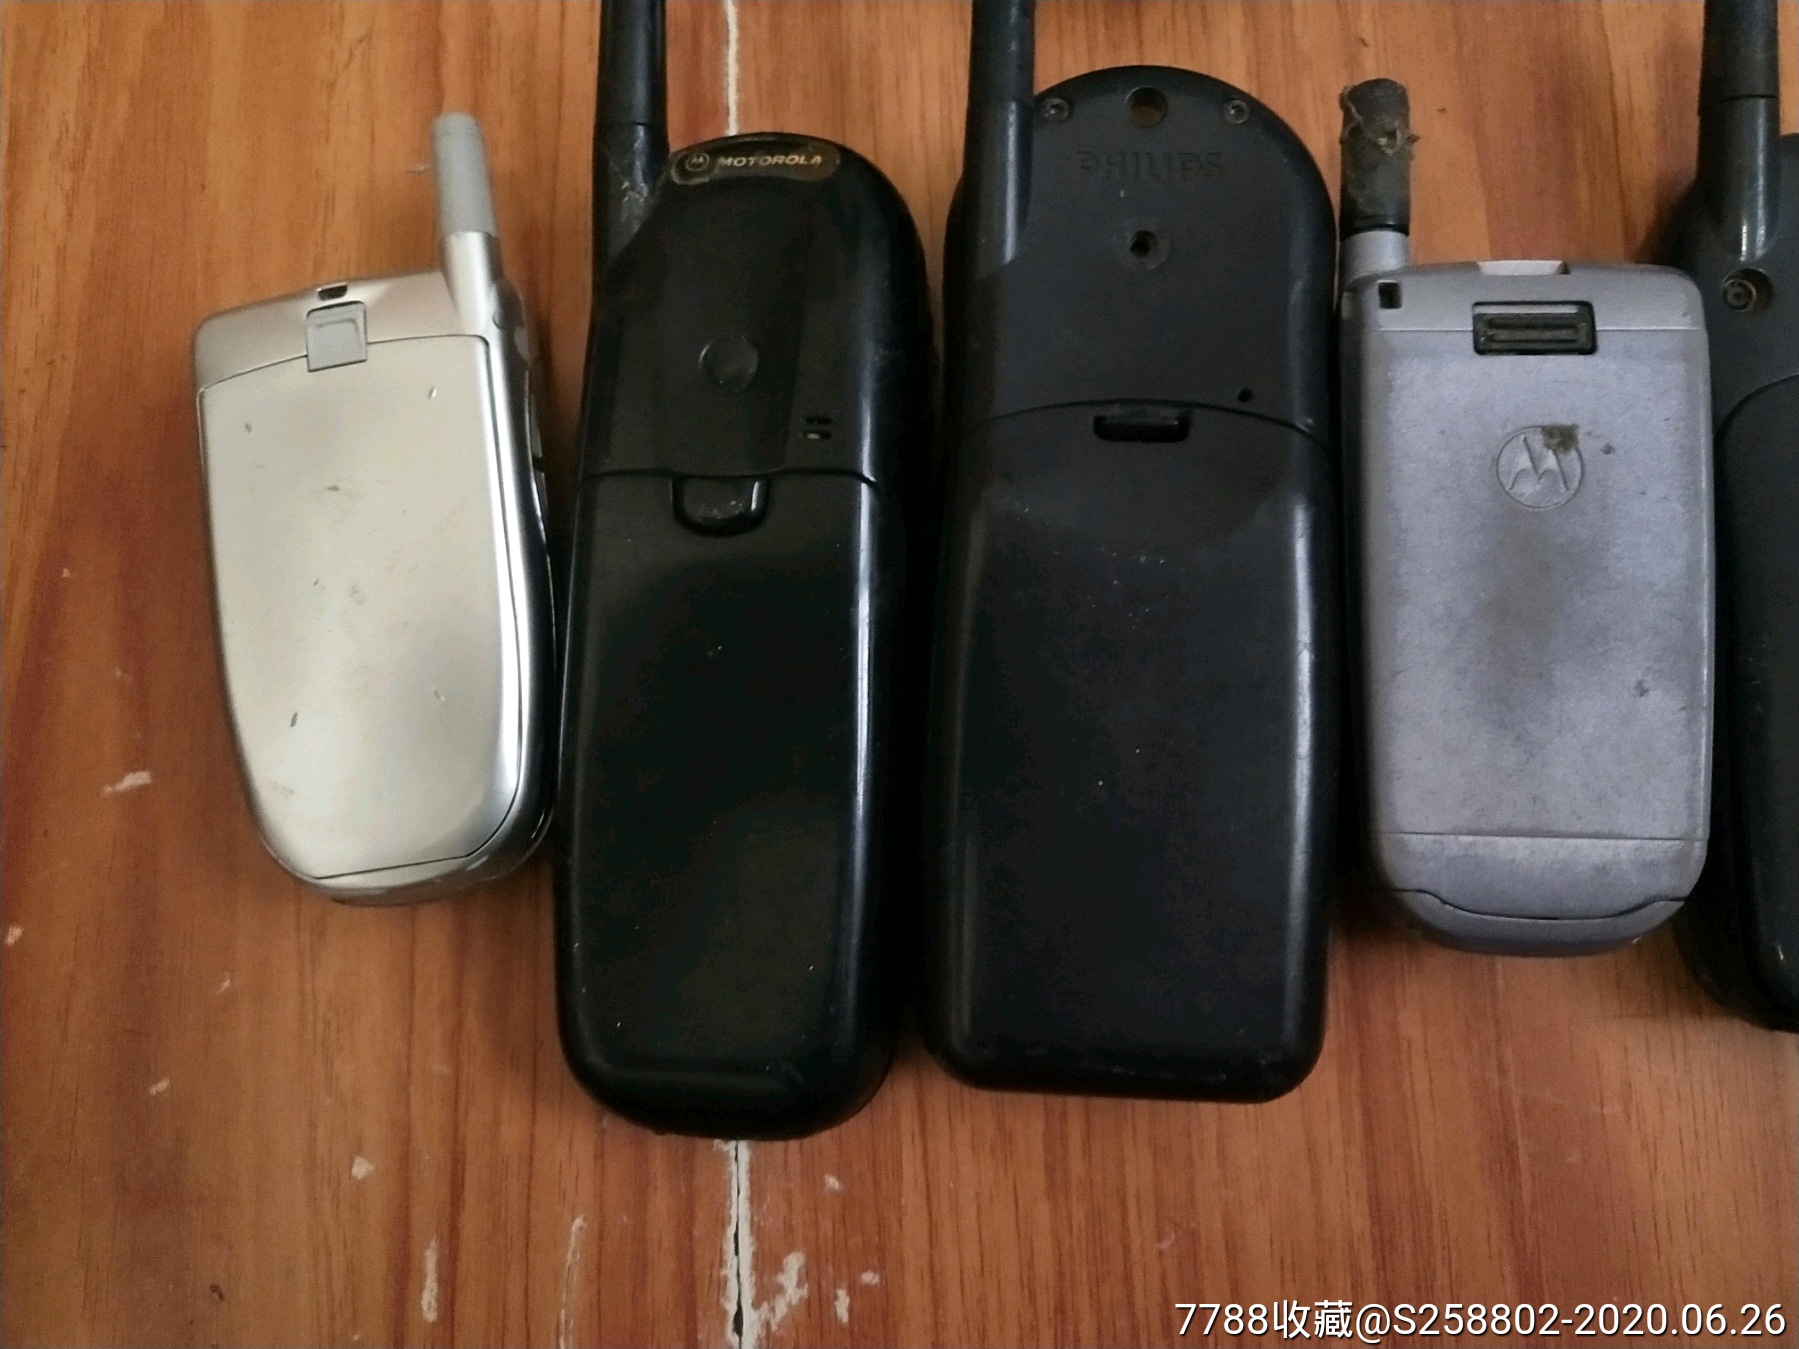 摩托罗拉手机,旧电话机,年代不详,按键电话,便携式_第8张